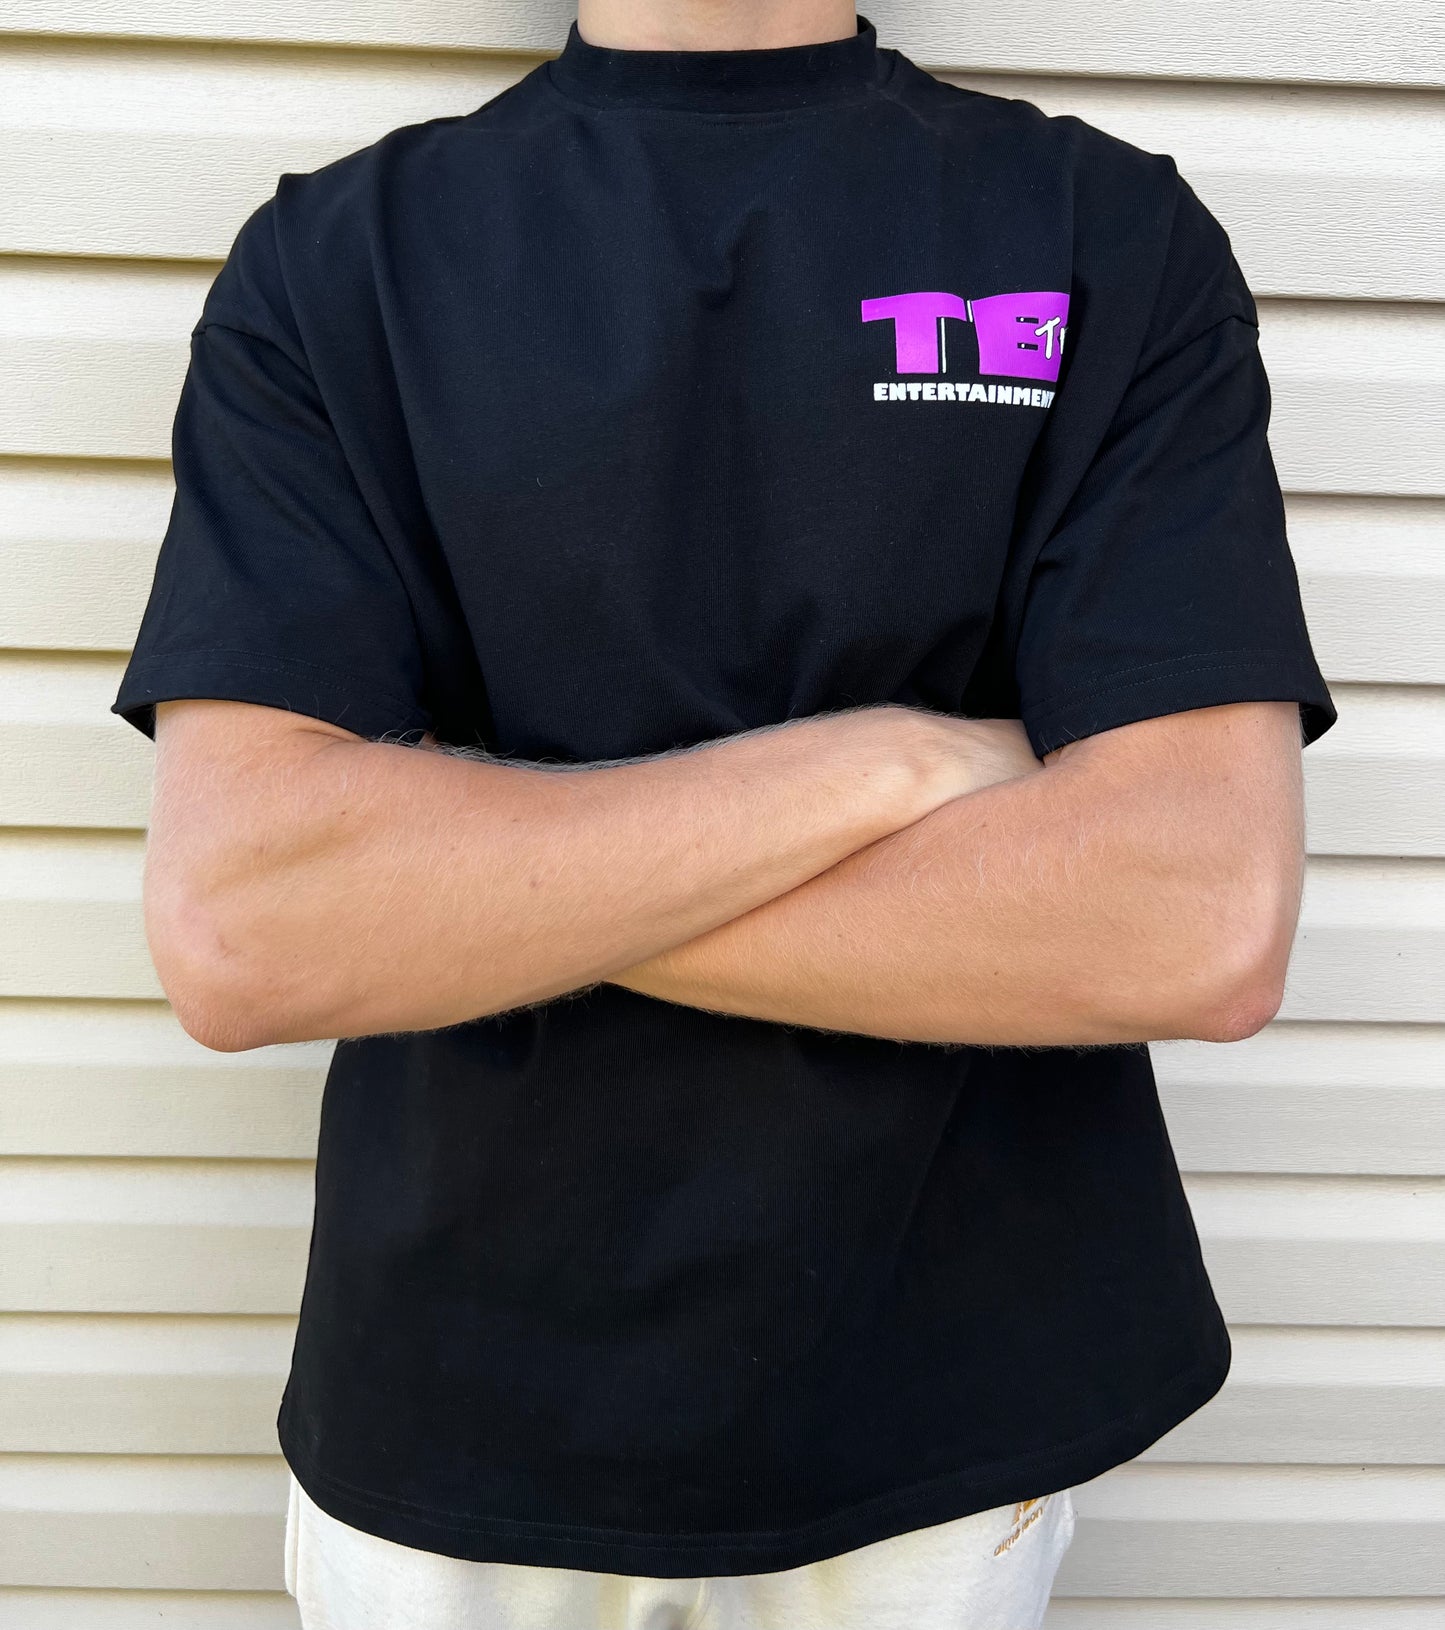 TommyBoyTV+ Logo Premium Tee (Black)